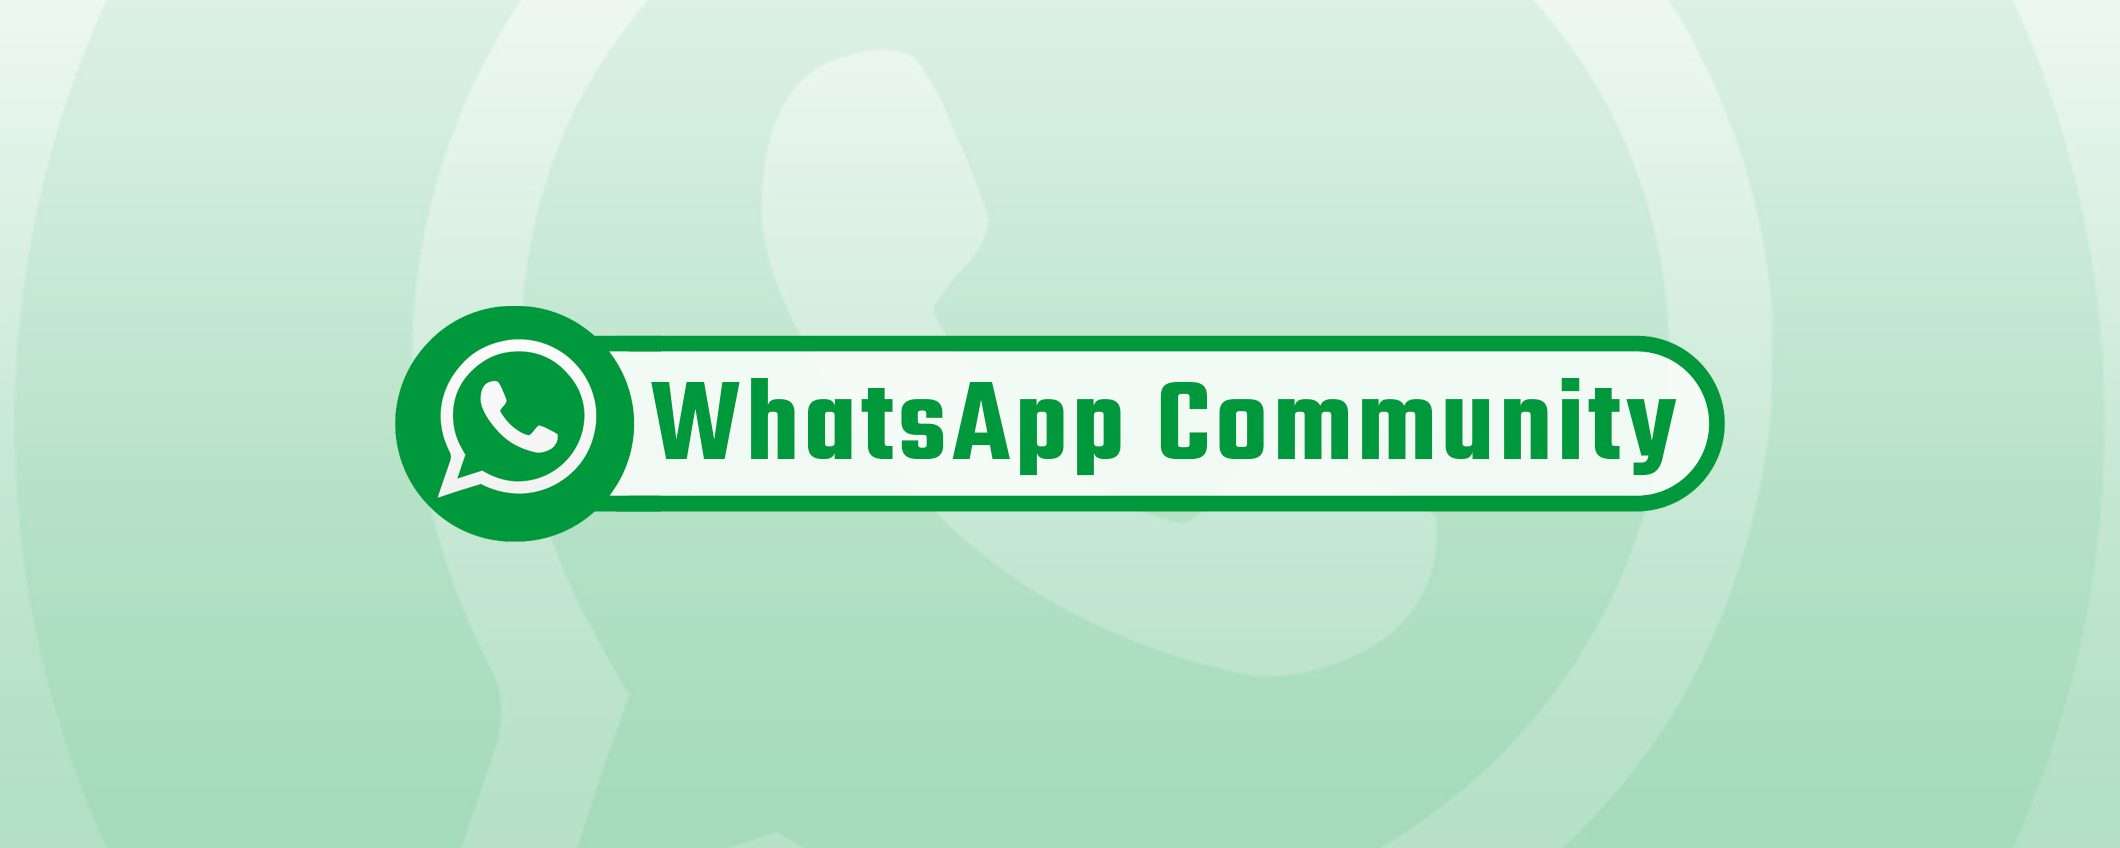 WhatsApp, sono arrivate le Community: cosa sono